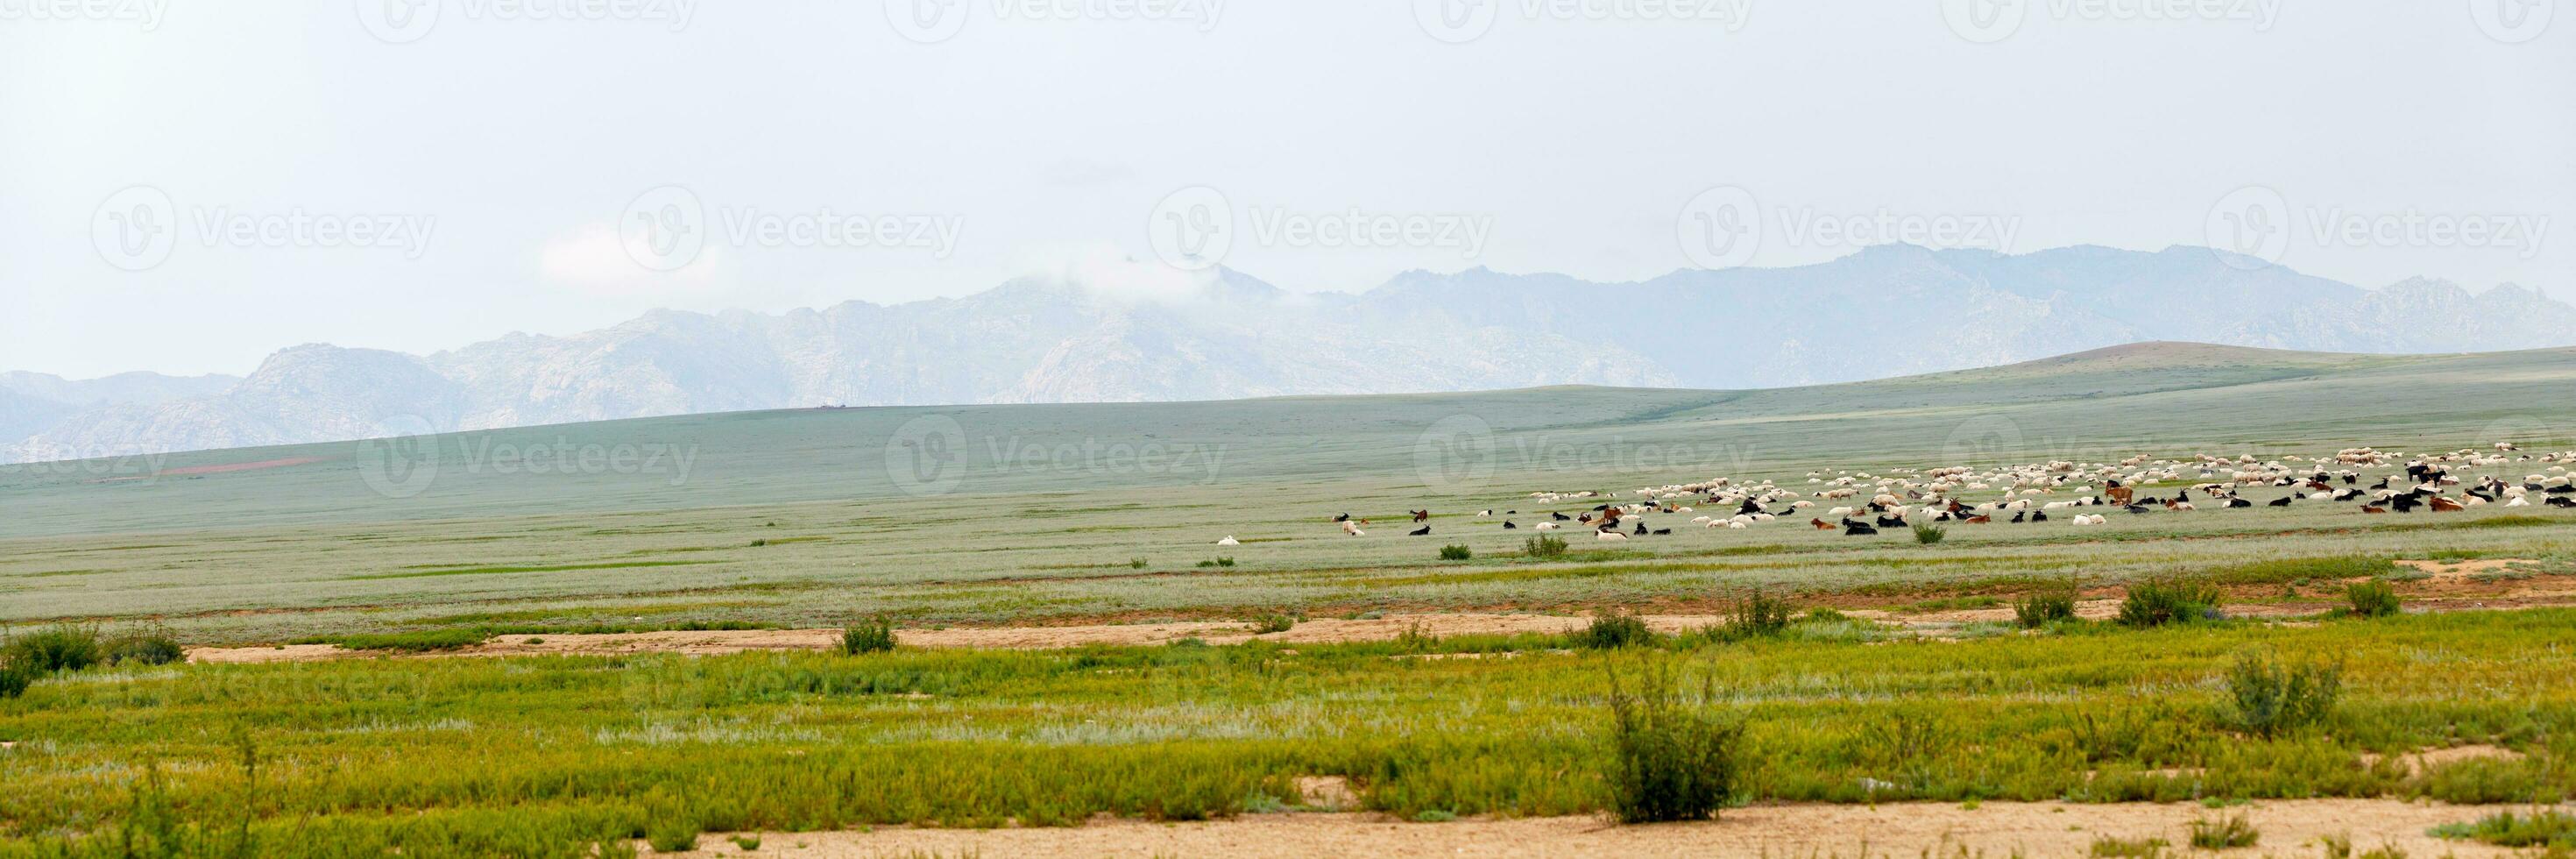 troupeau de mouton et chèvres pâturage dans le steppes de Mongolie photo